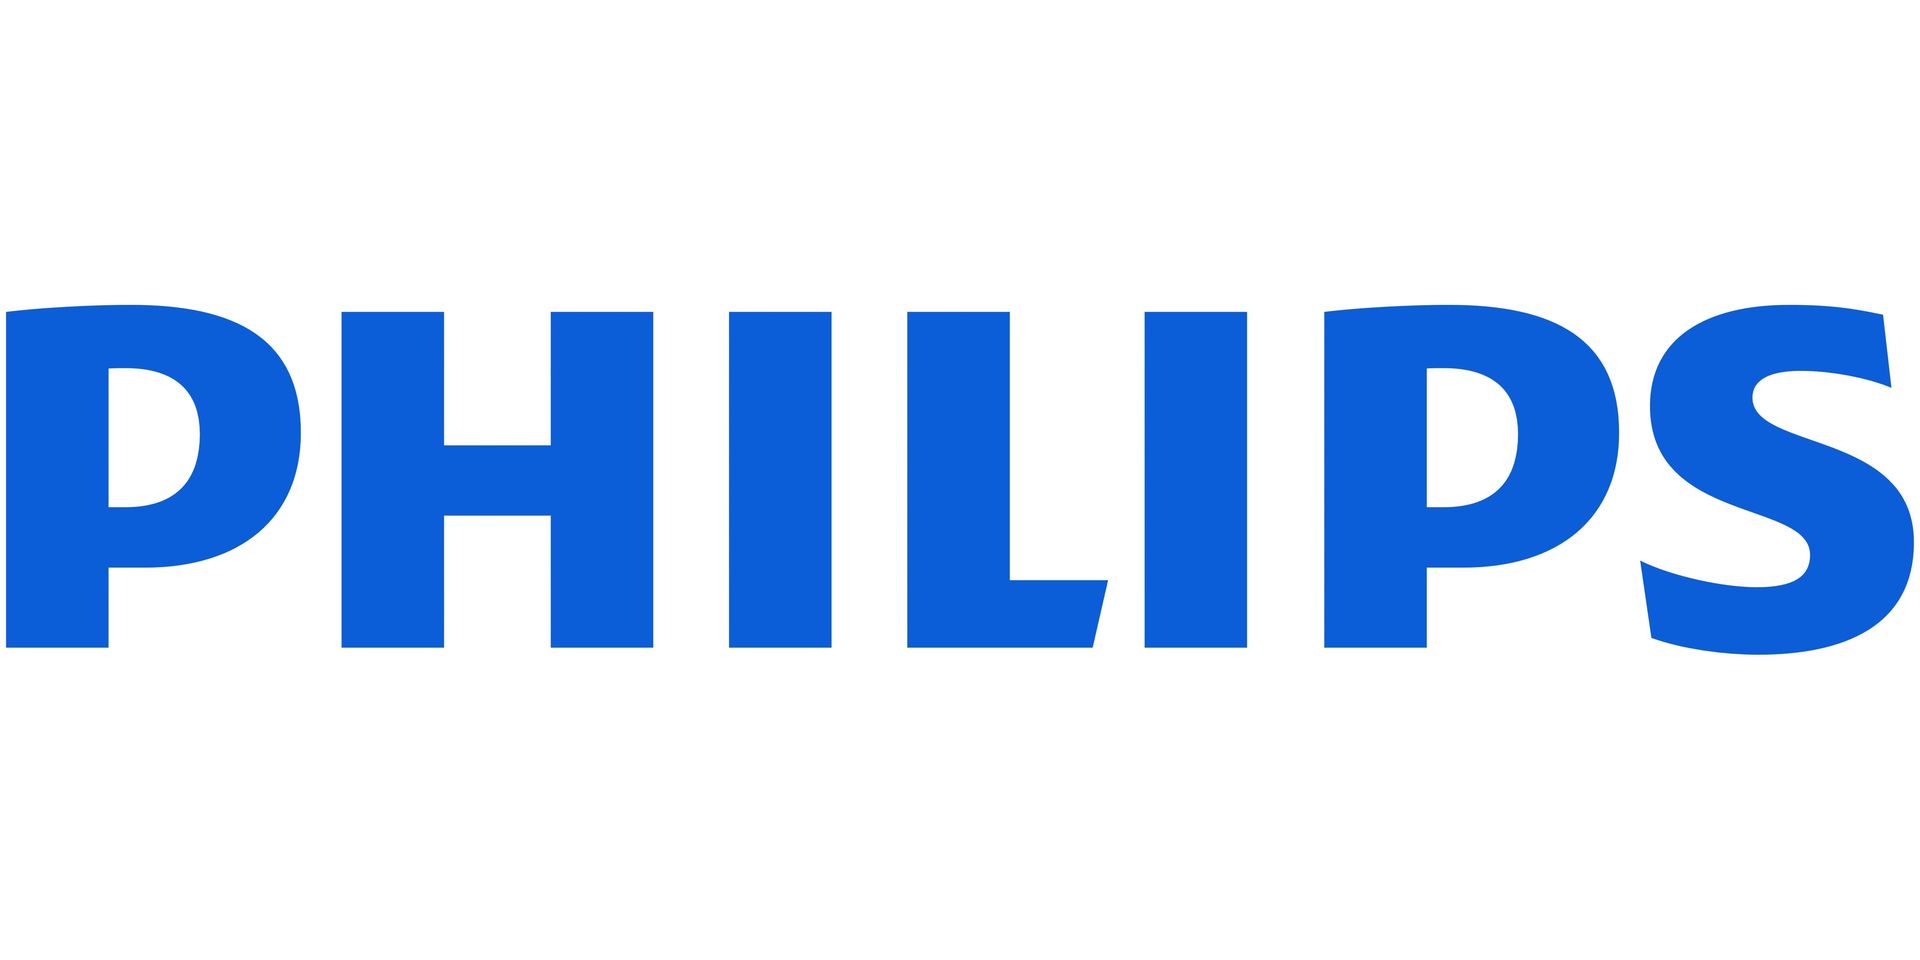 Brand: PHILIPS